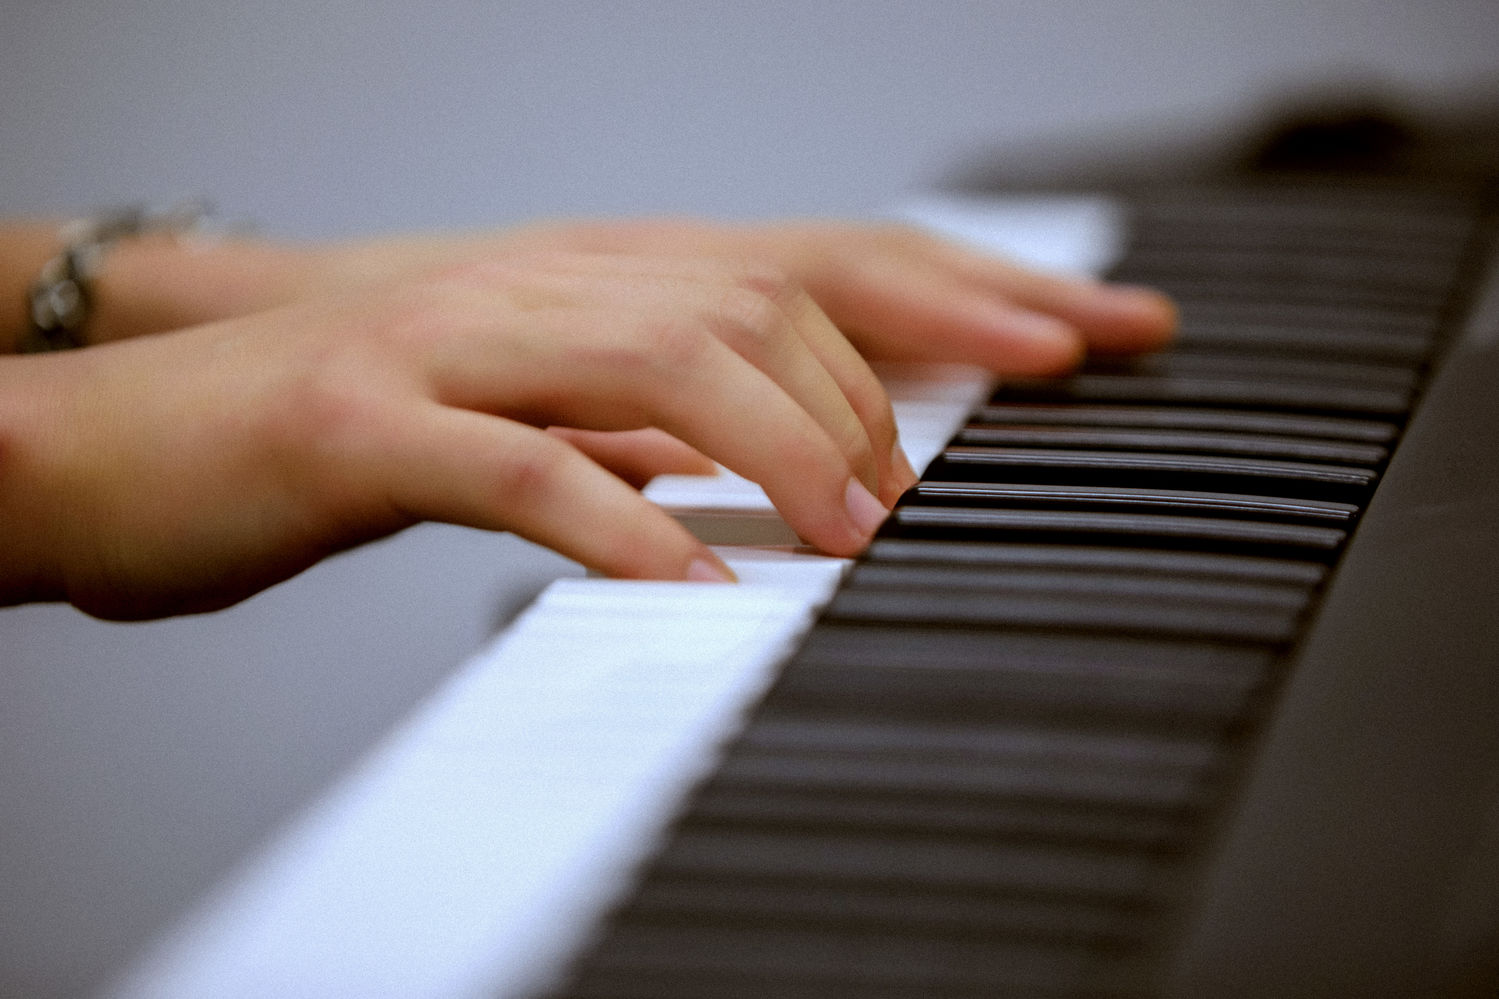 今日朱一龙工作室放出一双手在弹钢琴的照片,并且还发文表示:疯狂